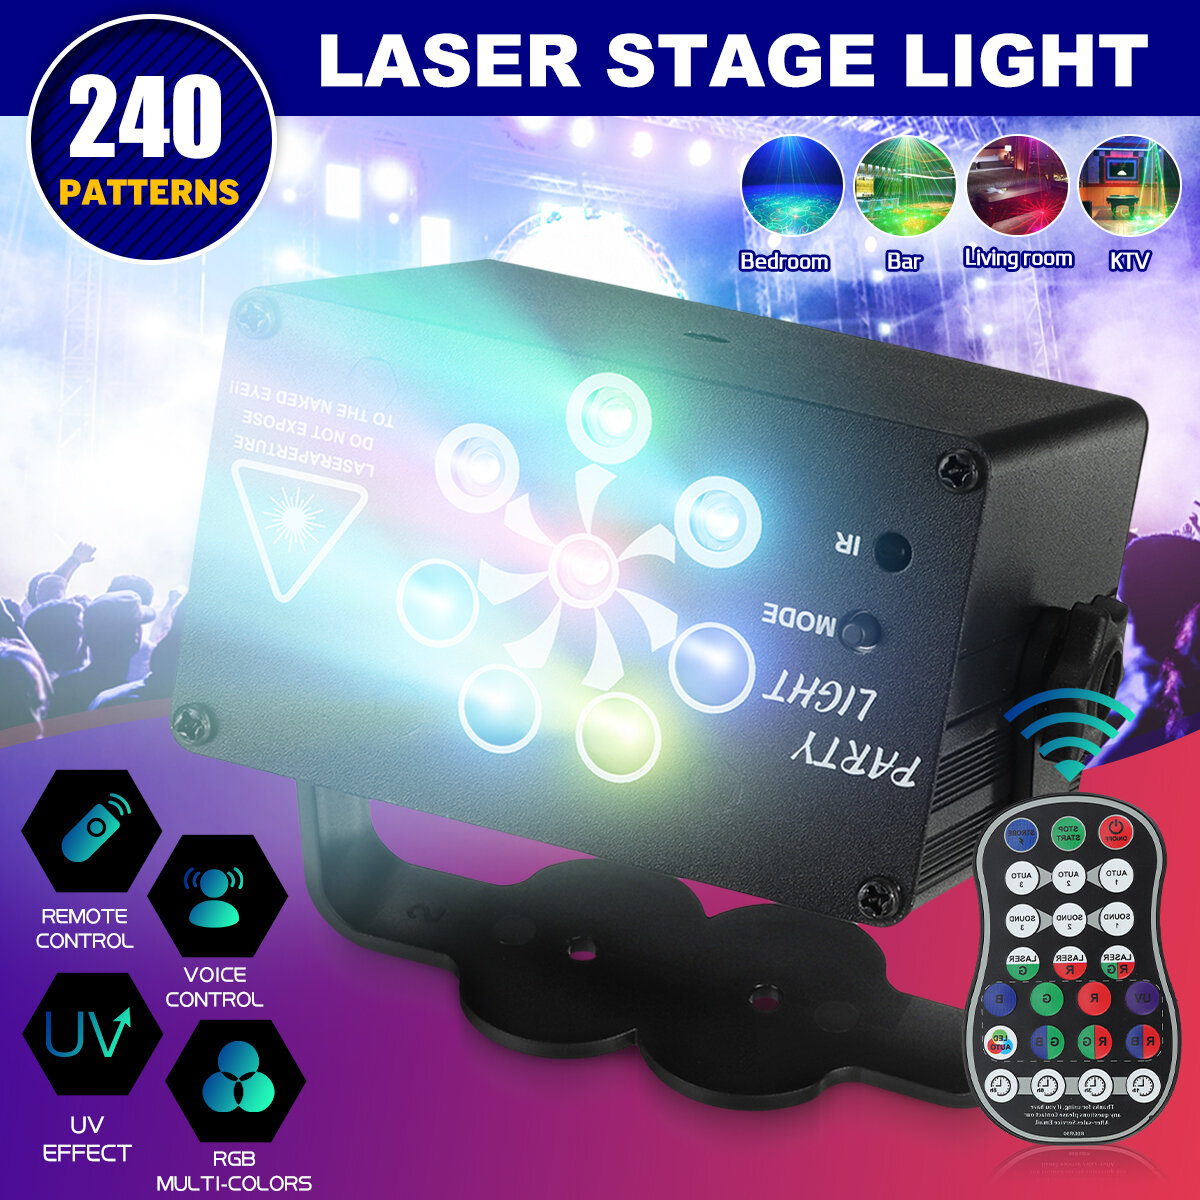 

Беспроводной 240 шаблонов Лазер Сценический свет RGB LED USB Проектор Party KTV DJ Disco Лампа Party Lights Voice + Дист